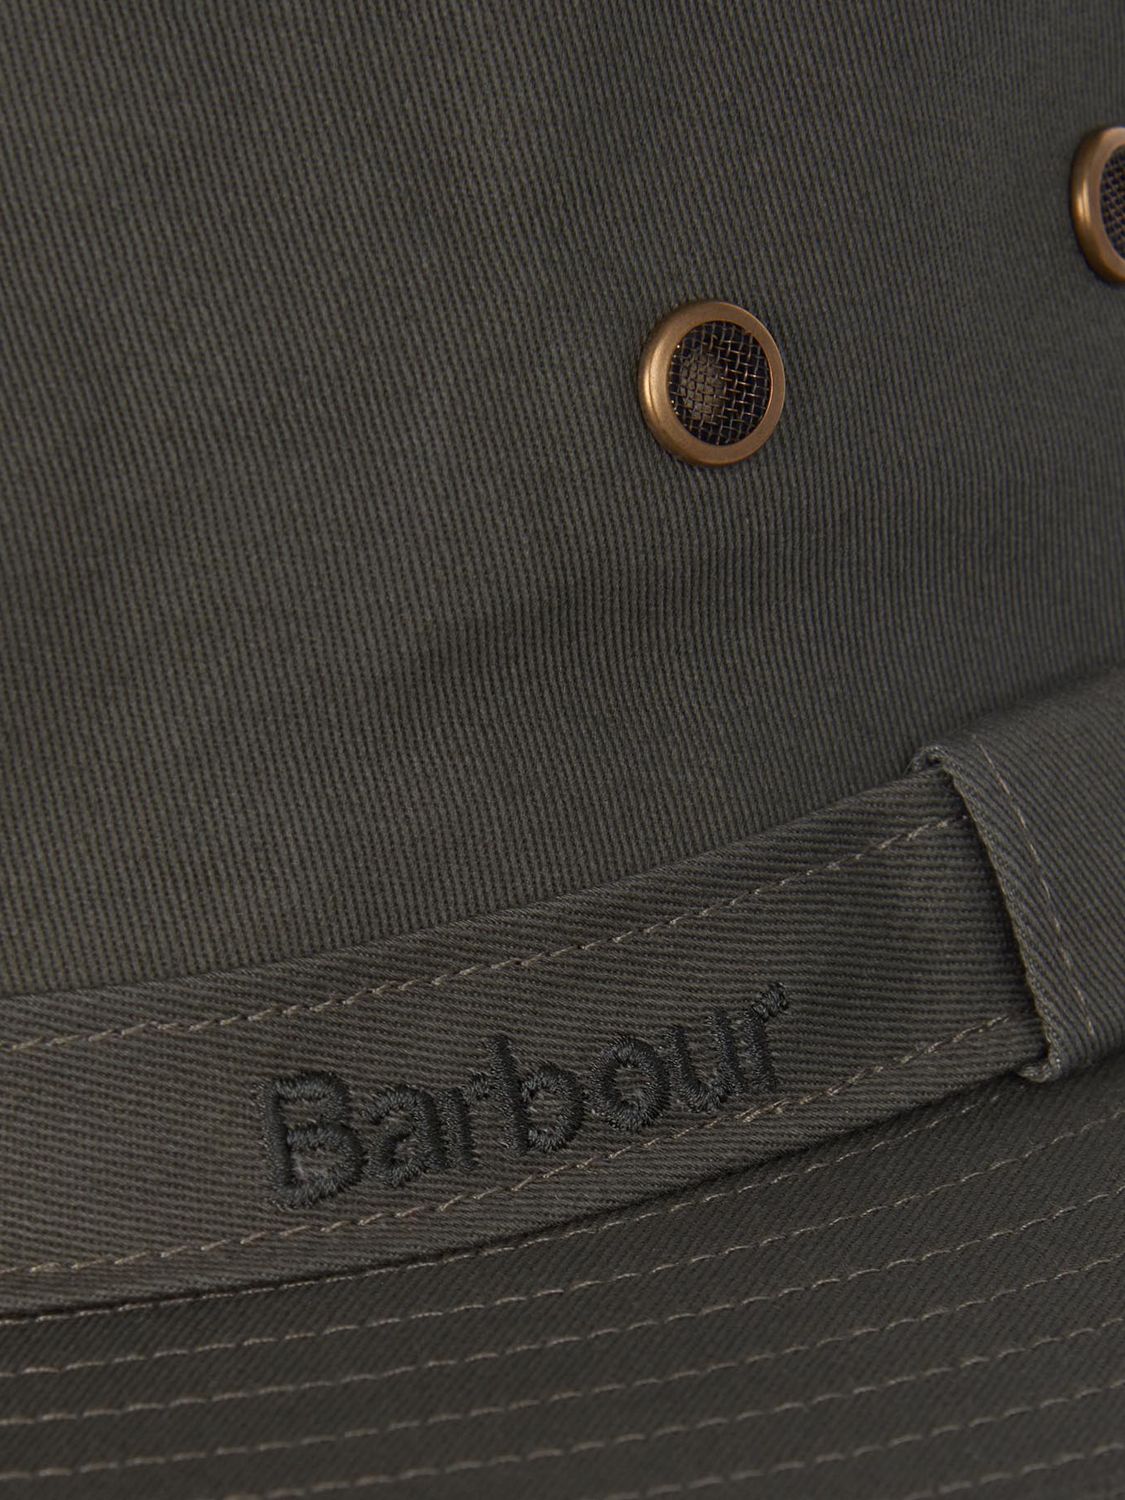 Barbour Dawson Safari Hat, Olive at John Lewis & Partners